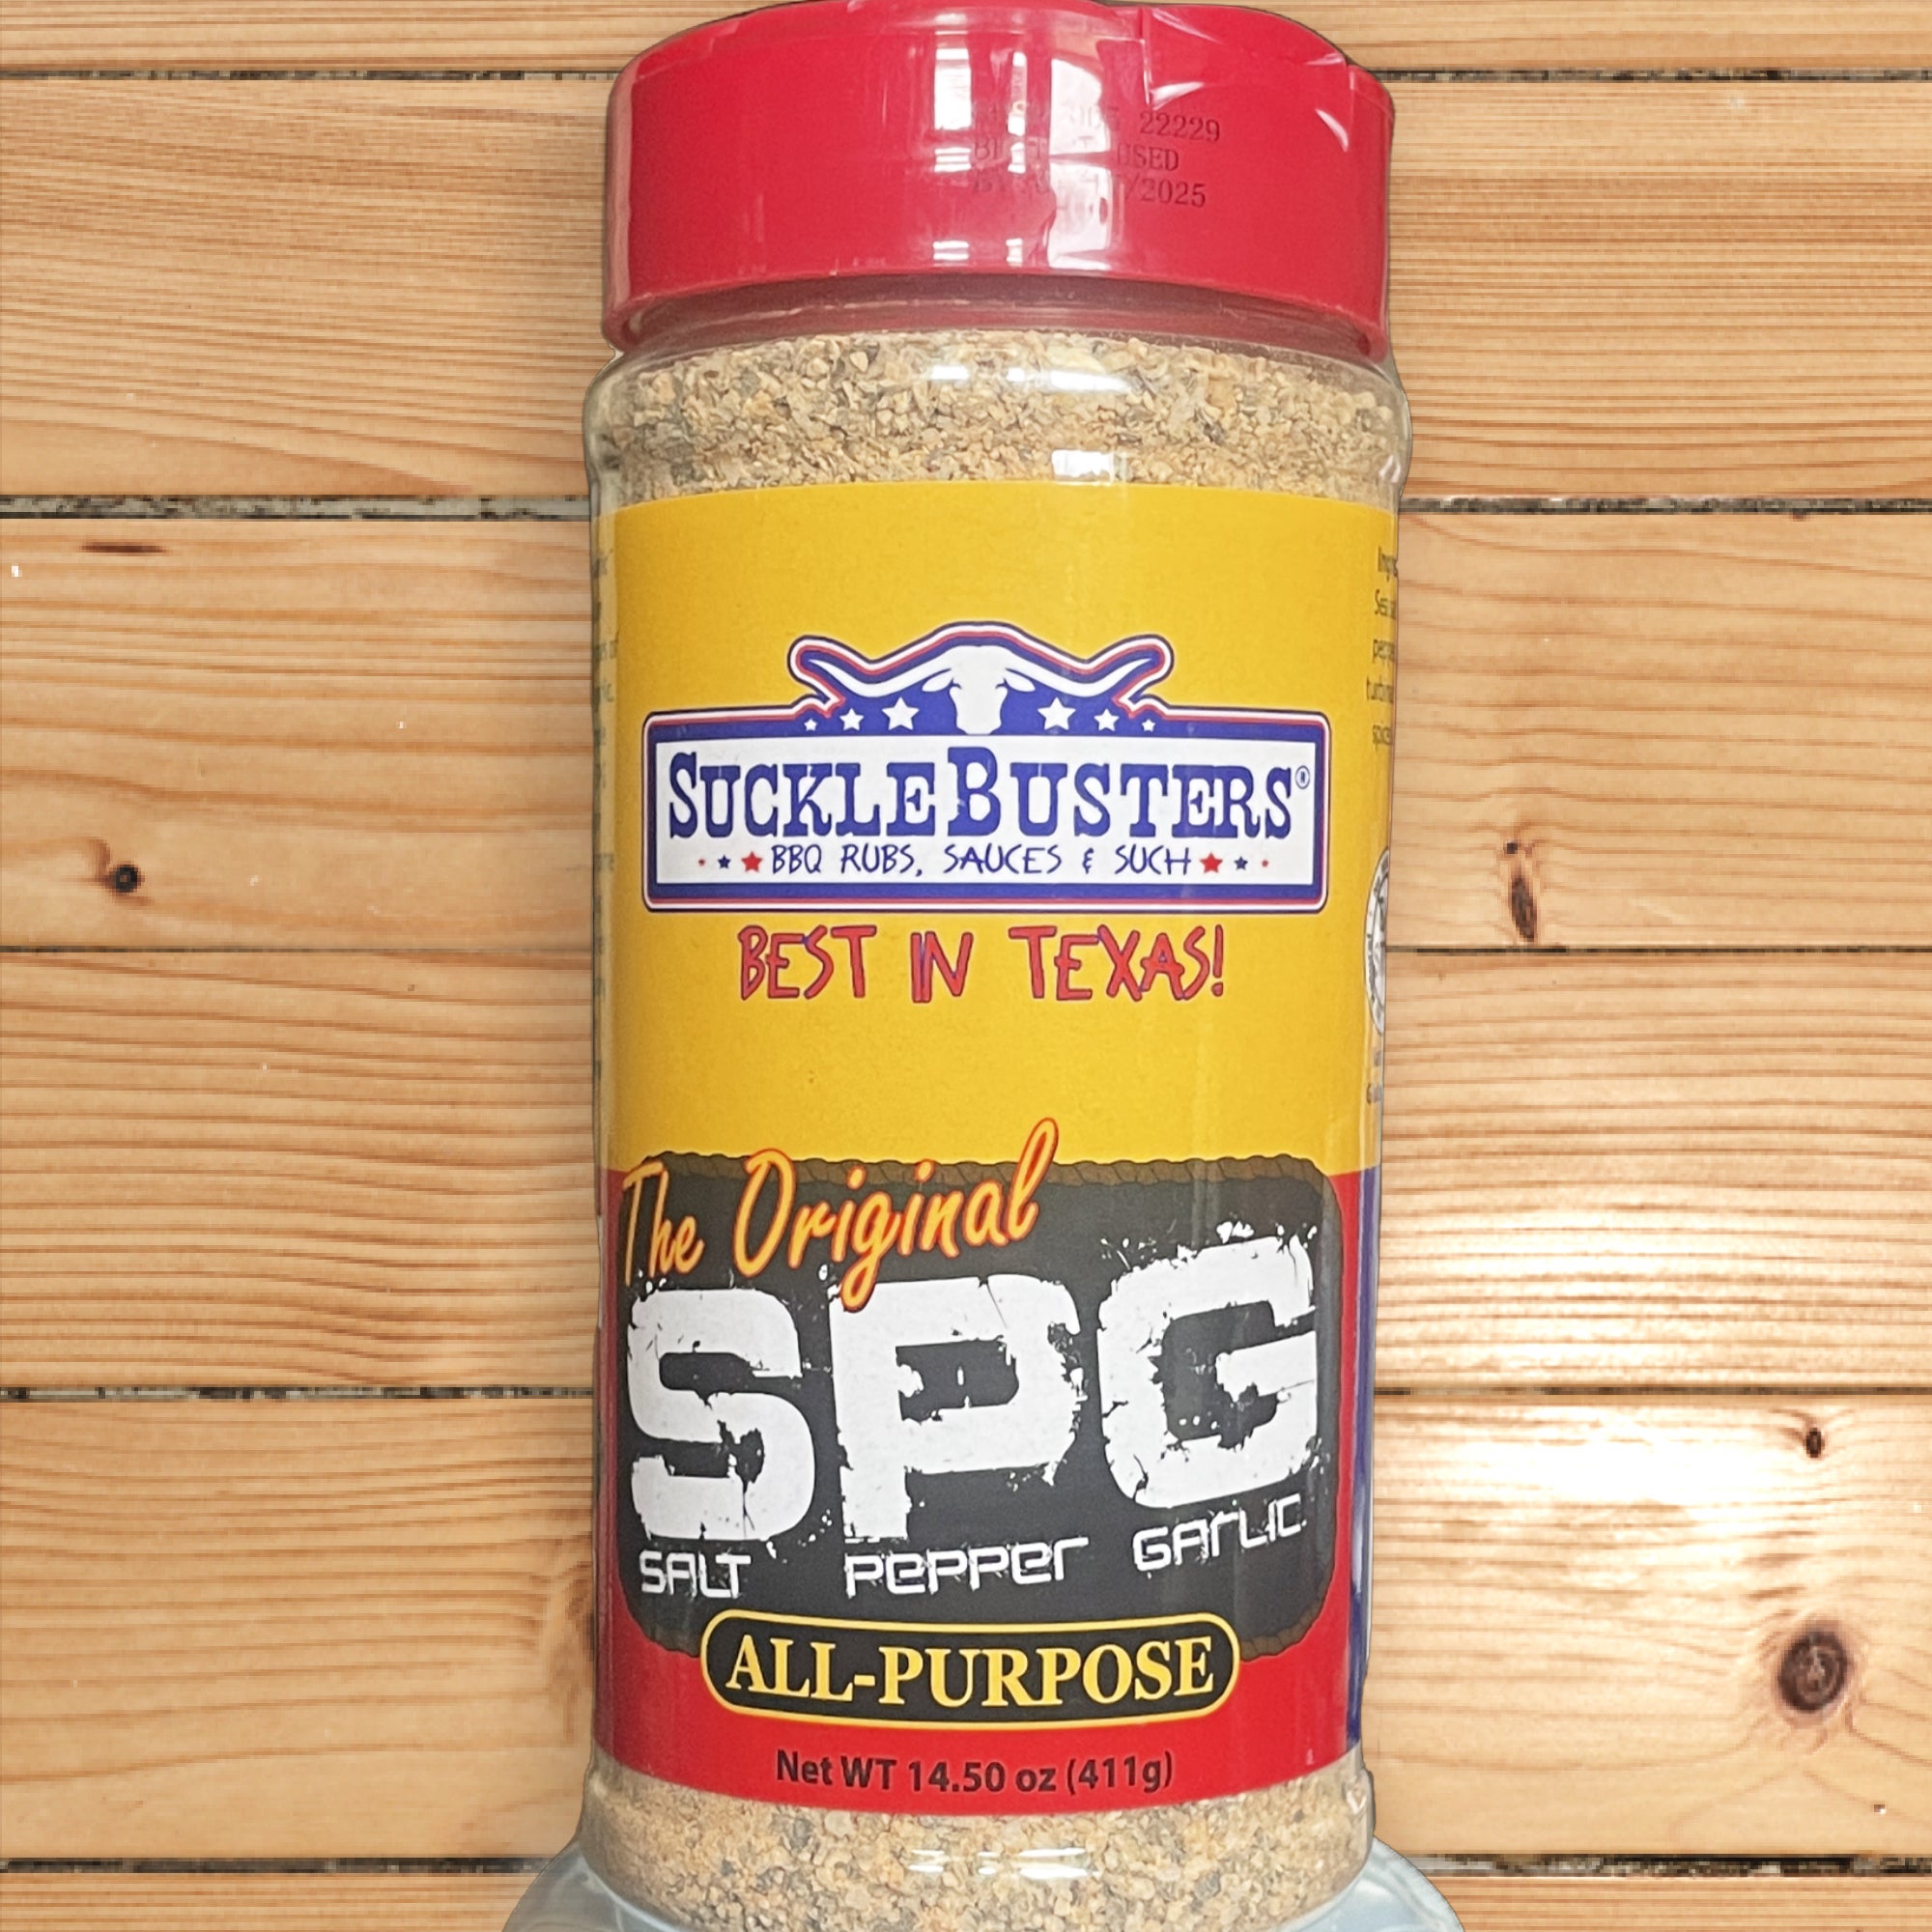 SPG Salt Pepper Garlic BBQ Rub 1.75 lb